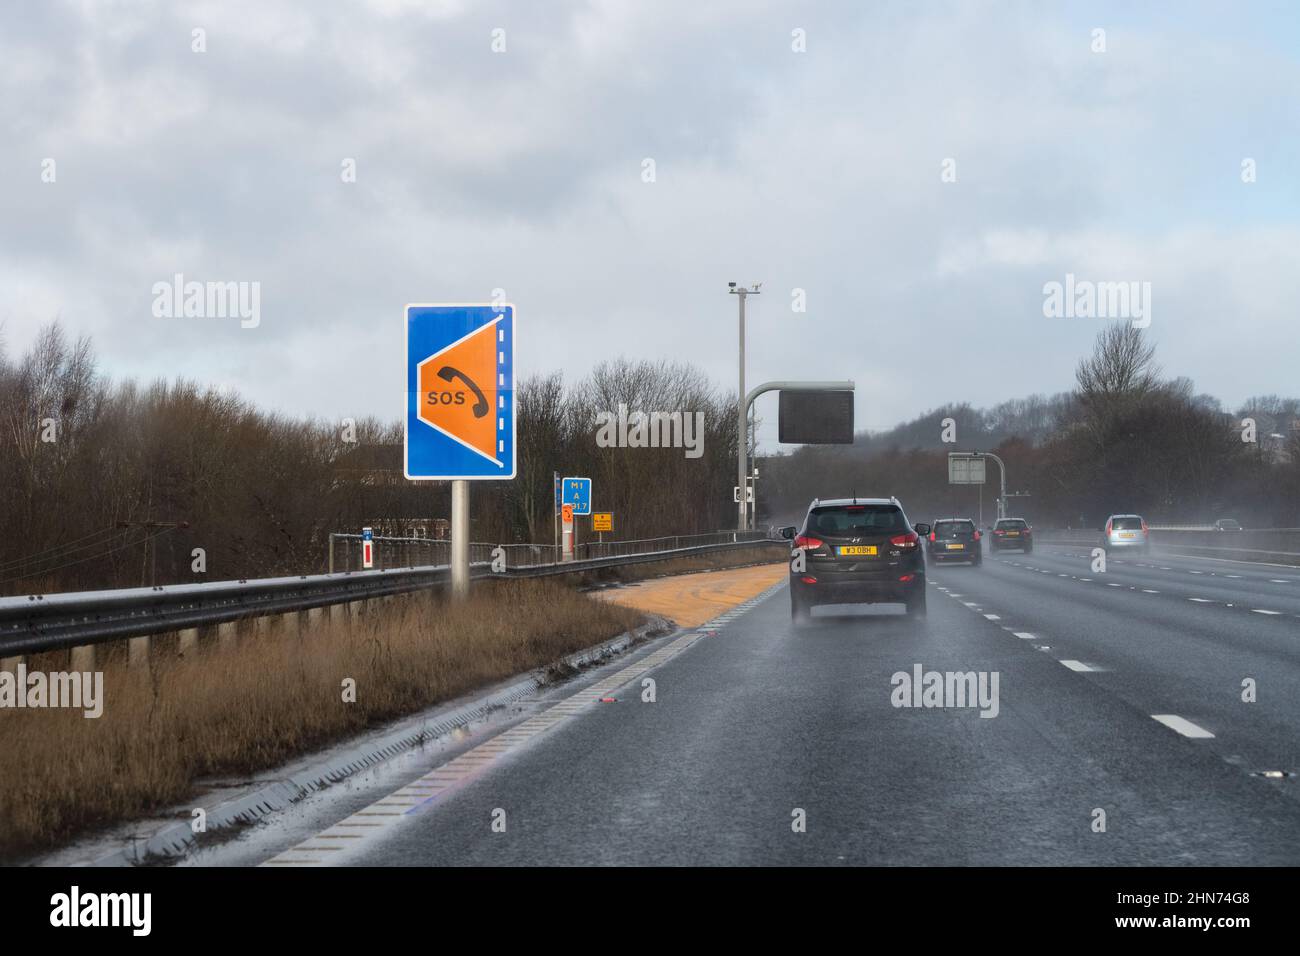 Smart Autobahn Notrefugium und sos-Telefon auf der Autobahn M1 ohne harte Schulter zwischen den Kreuzungen 39 und 40 in Richtung Norden - England, Großbritannien Stockfoto